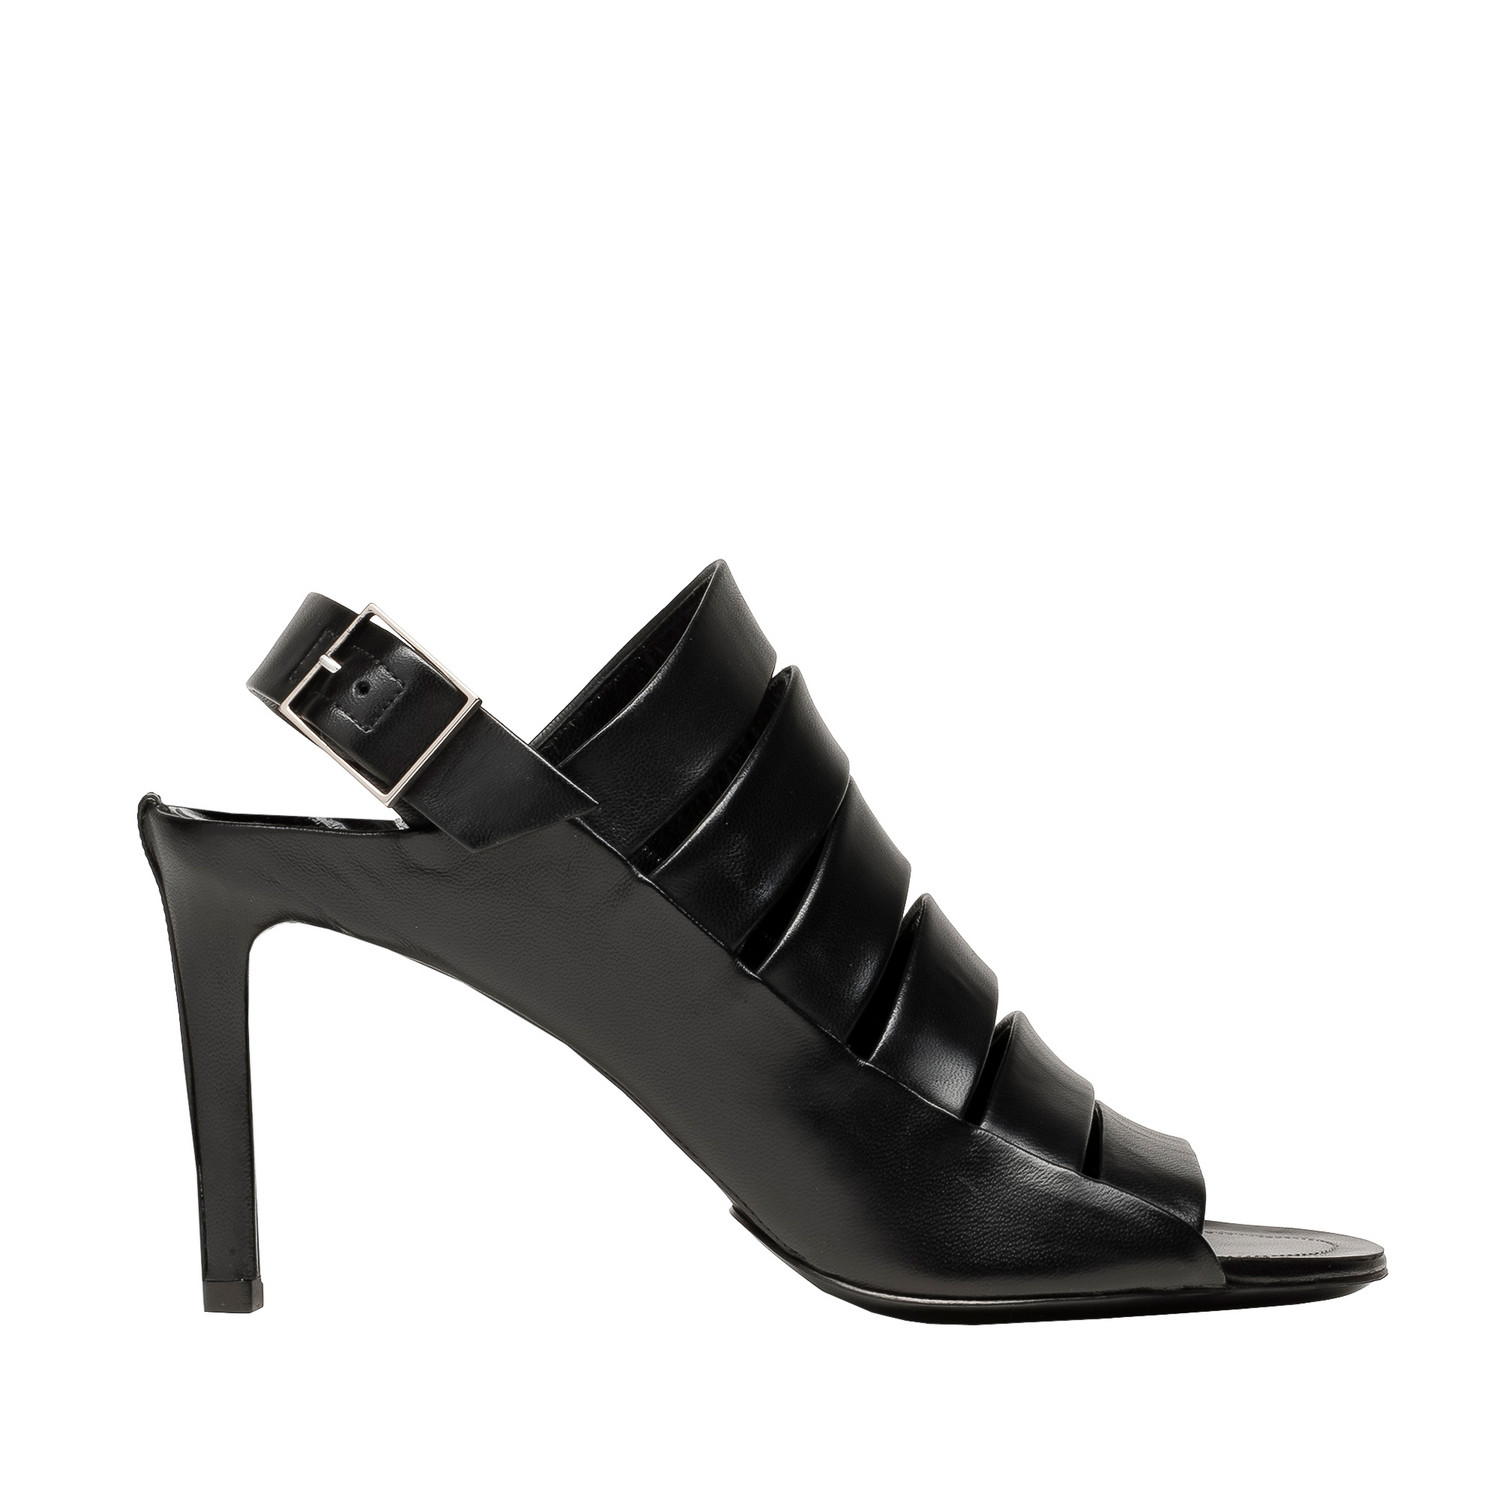 Balenciaga Balenciaga Spy Sandals - - Women's Spy Shoes